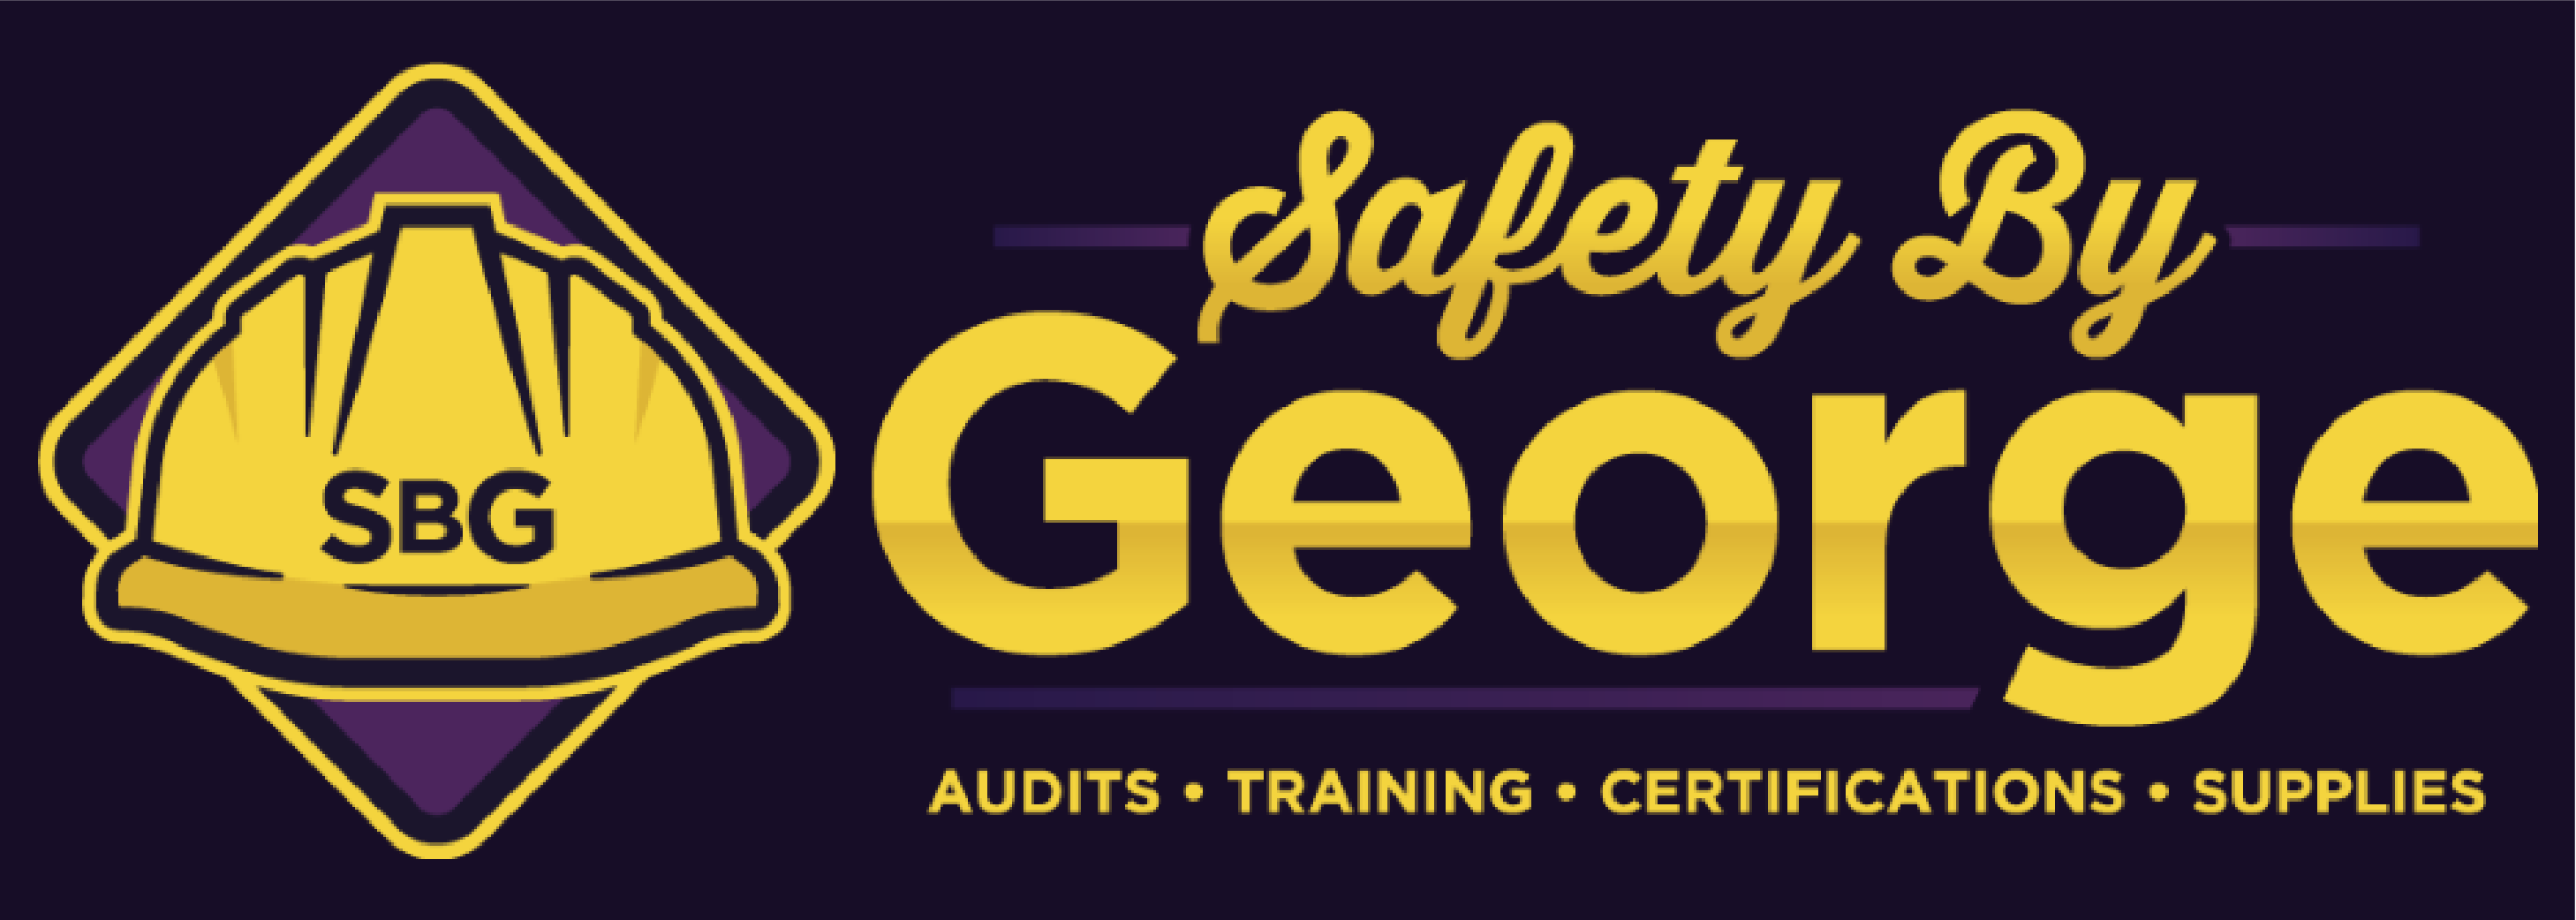 safetybygeorge, LLC